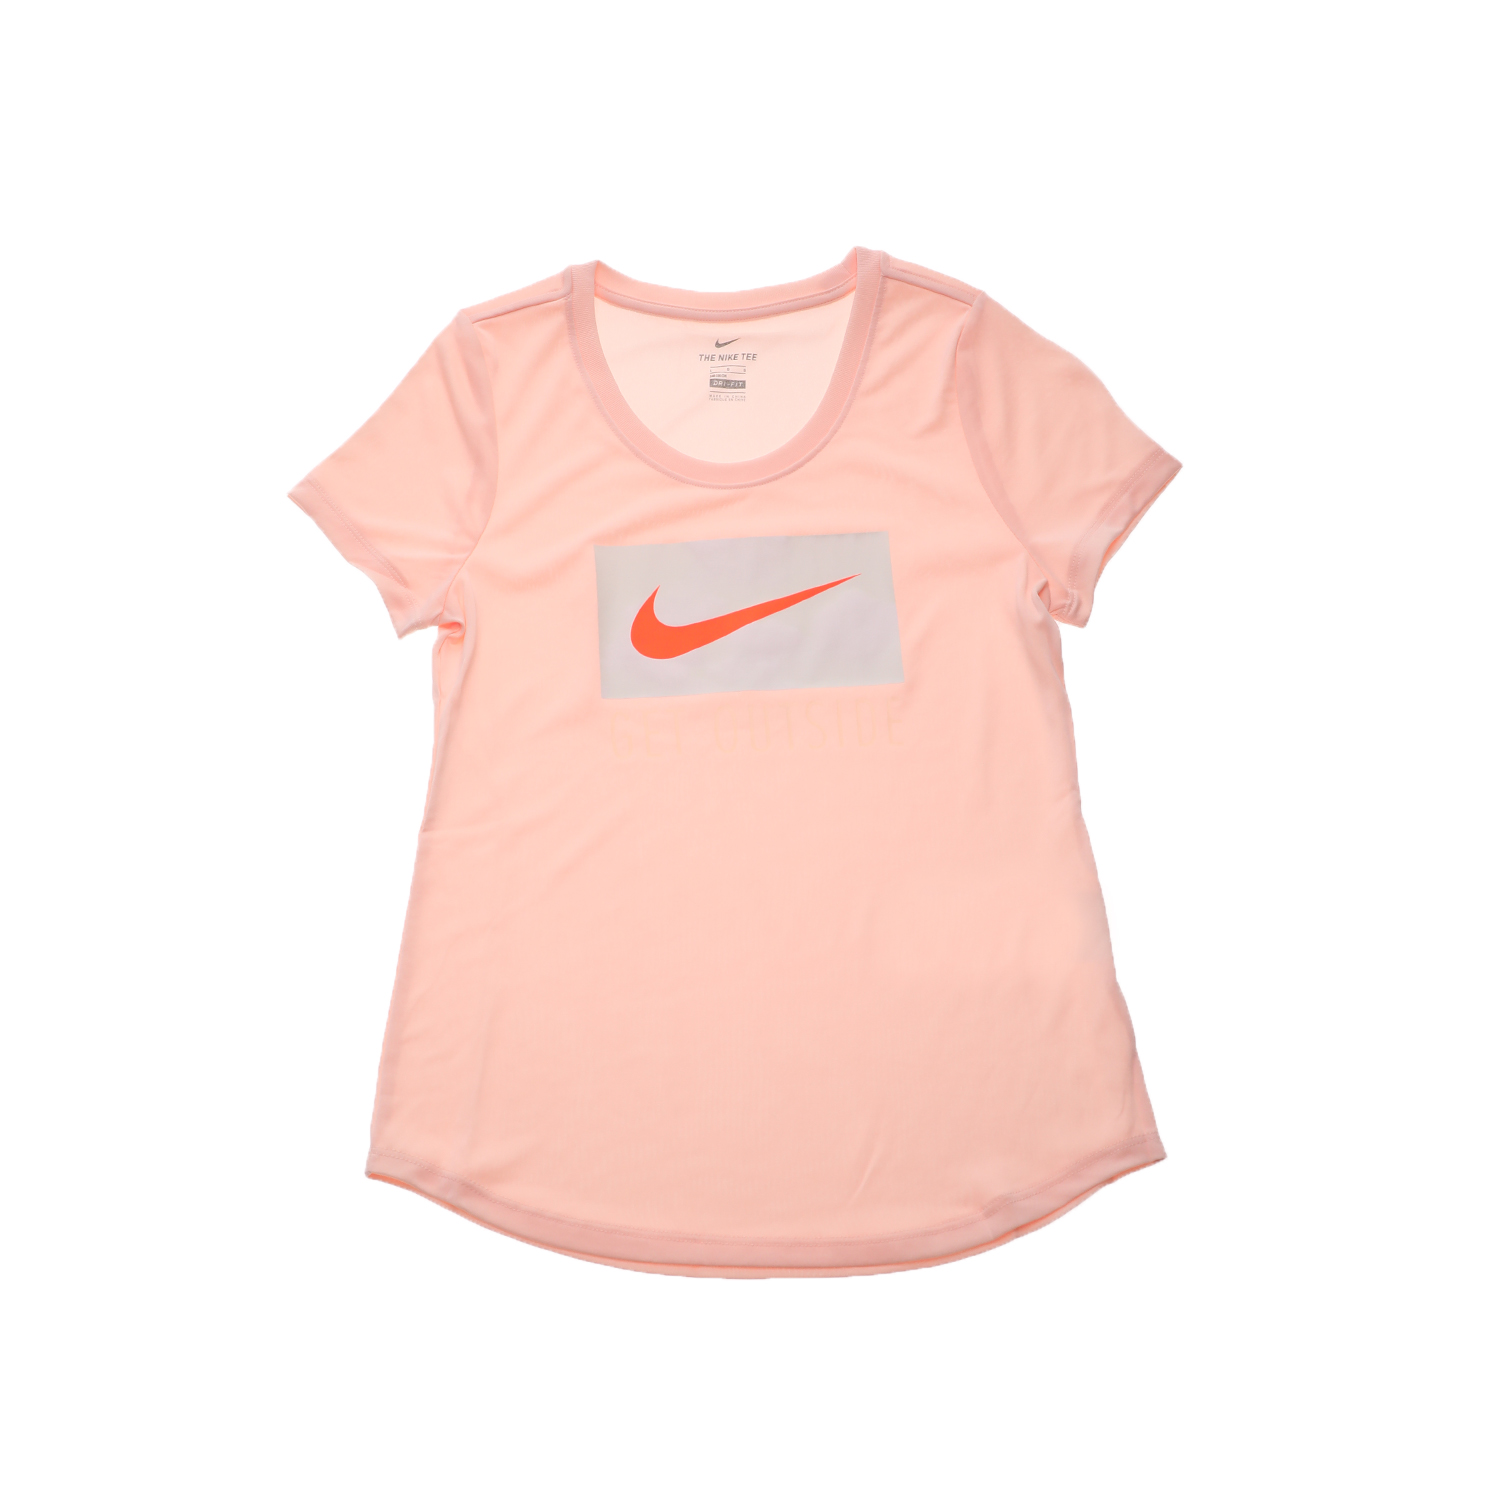 Παιδικά/Girls/Ρούχα/Αθλητικά NIKE - Παιδικό αθλητικό t-shirt NIKE SW DRY LEG GO SCOOP UV ροζ